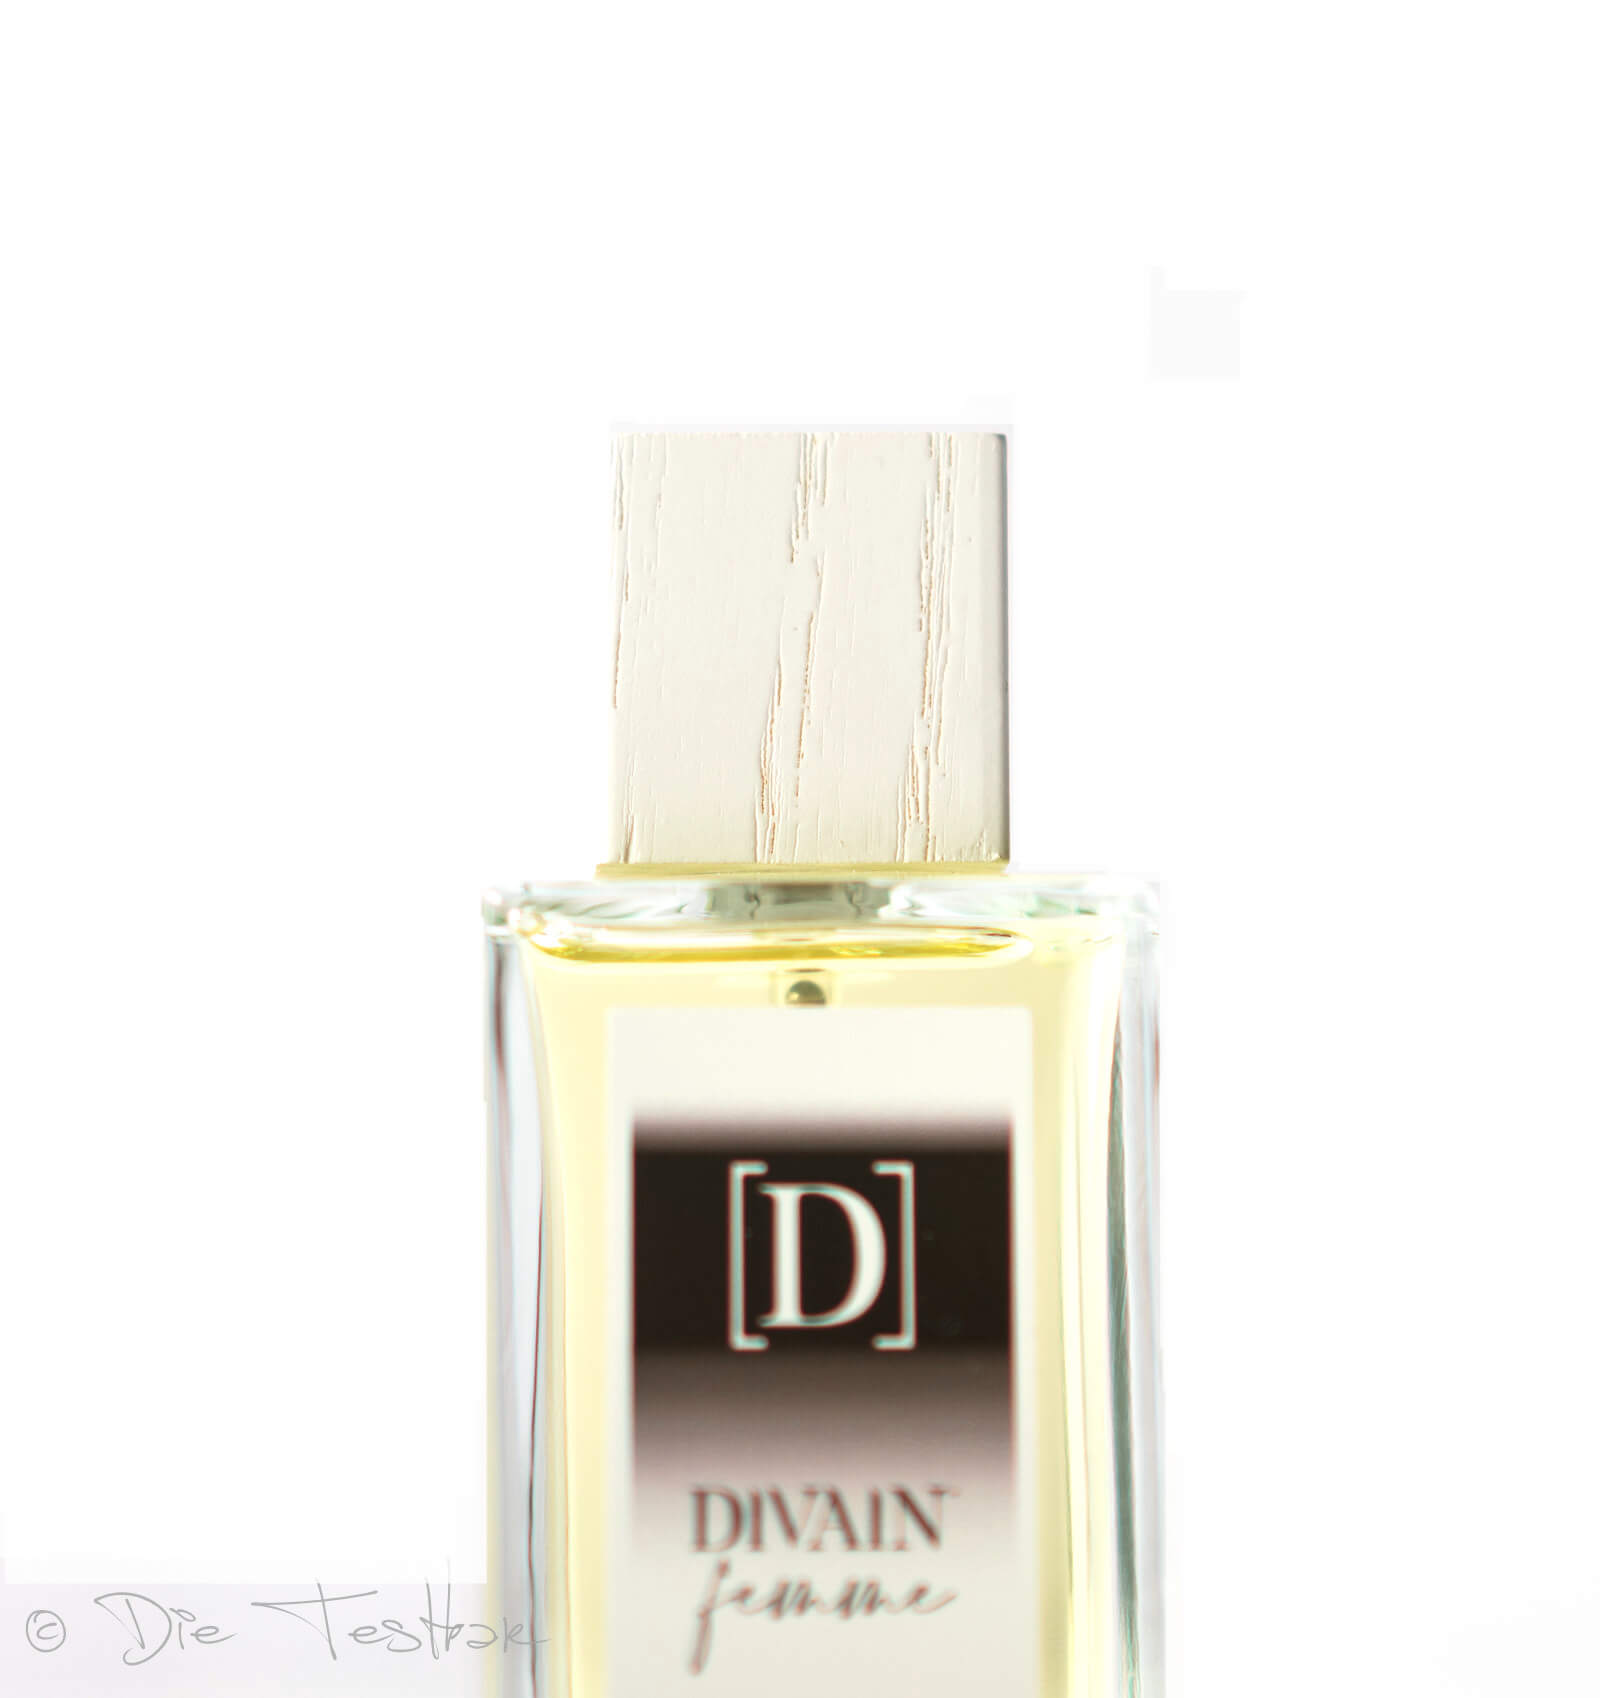 Review - Parfumzwillinge von Divain im Test 5